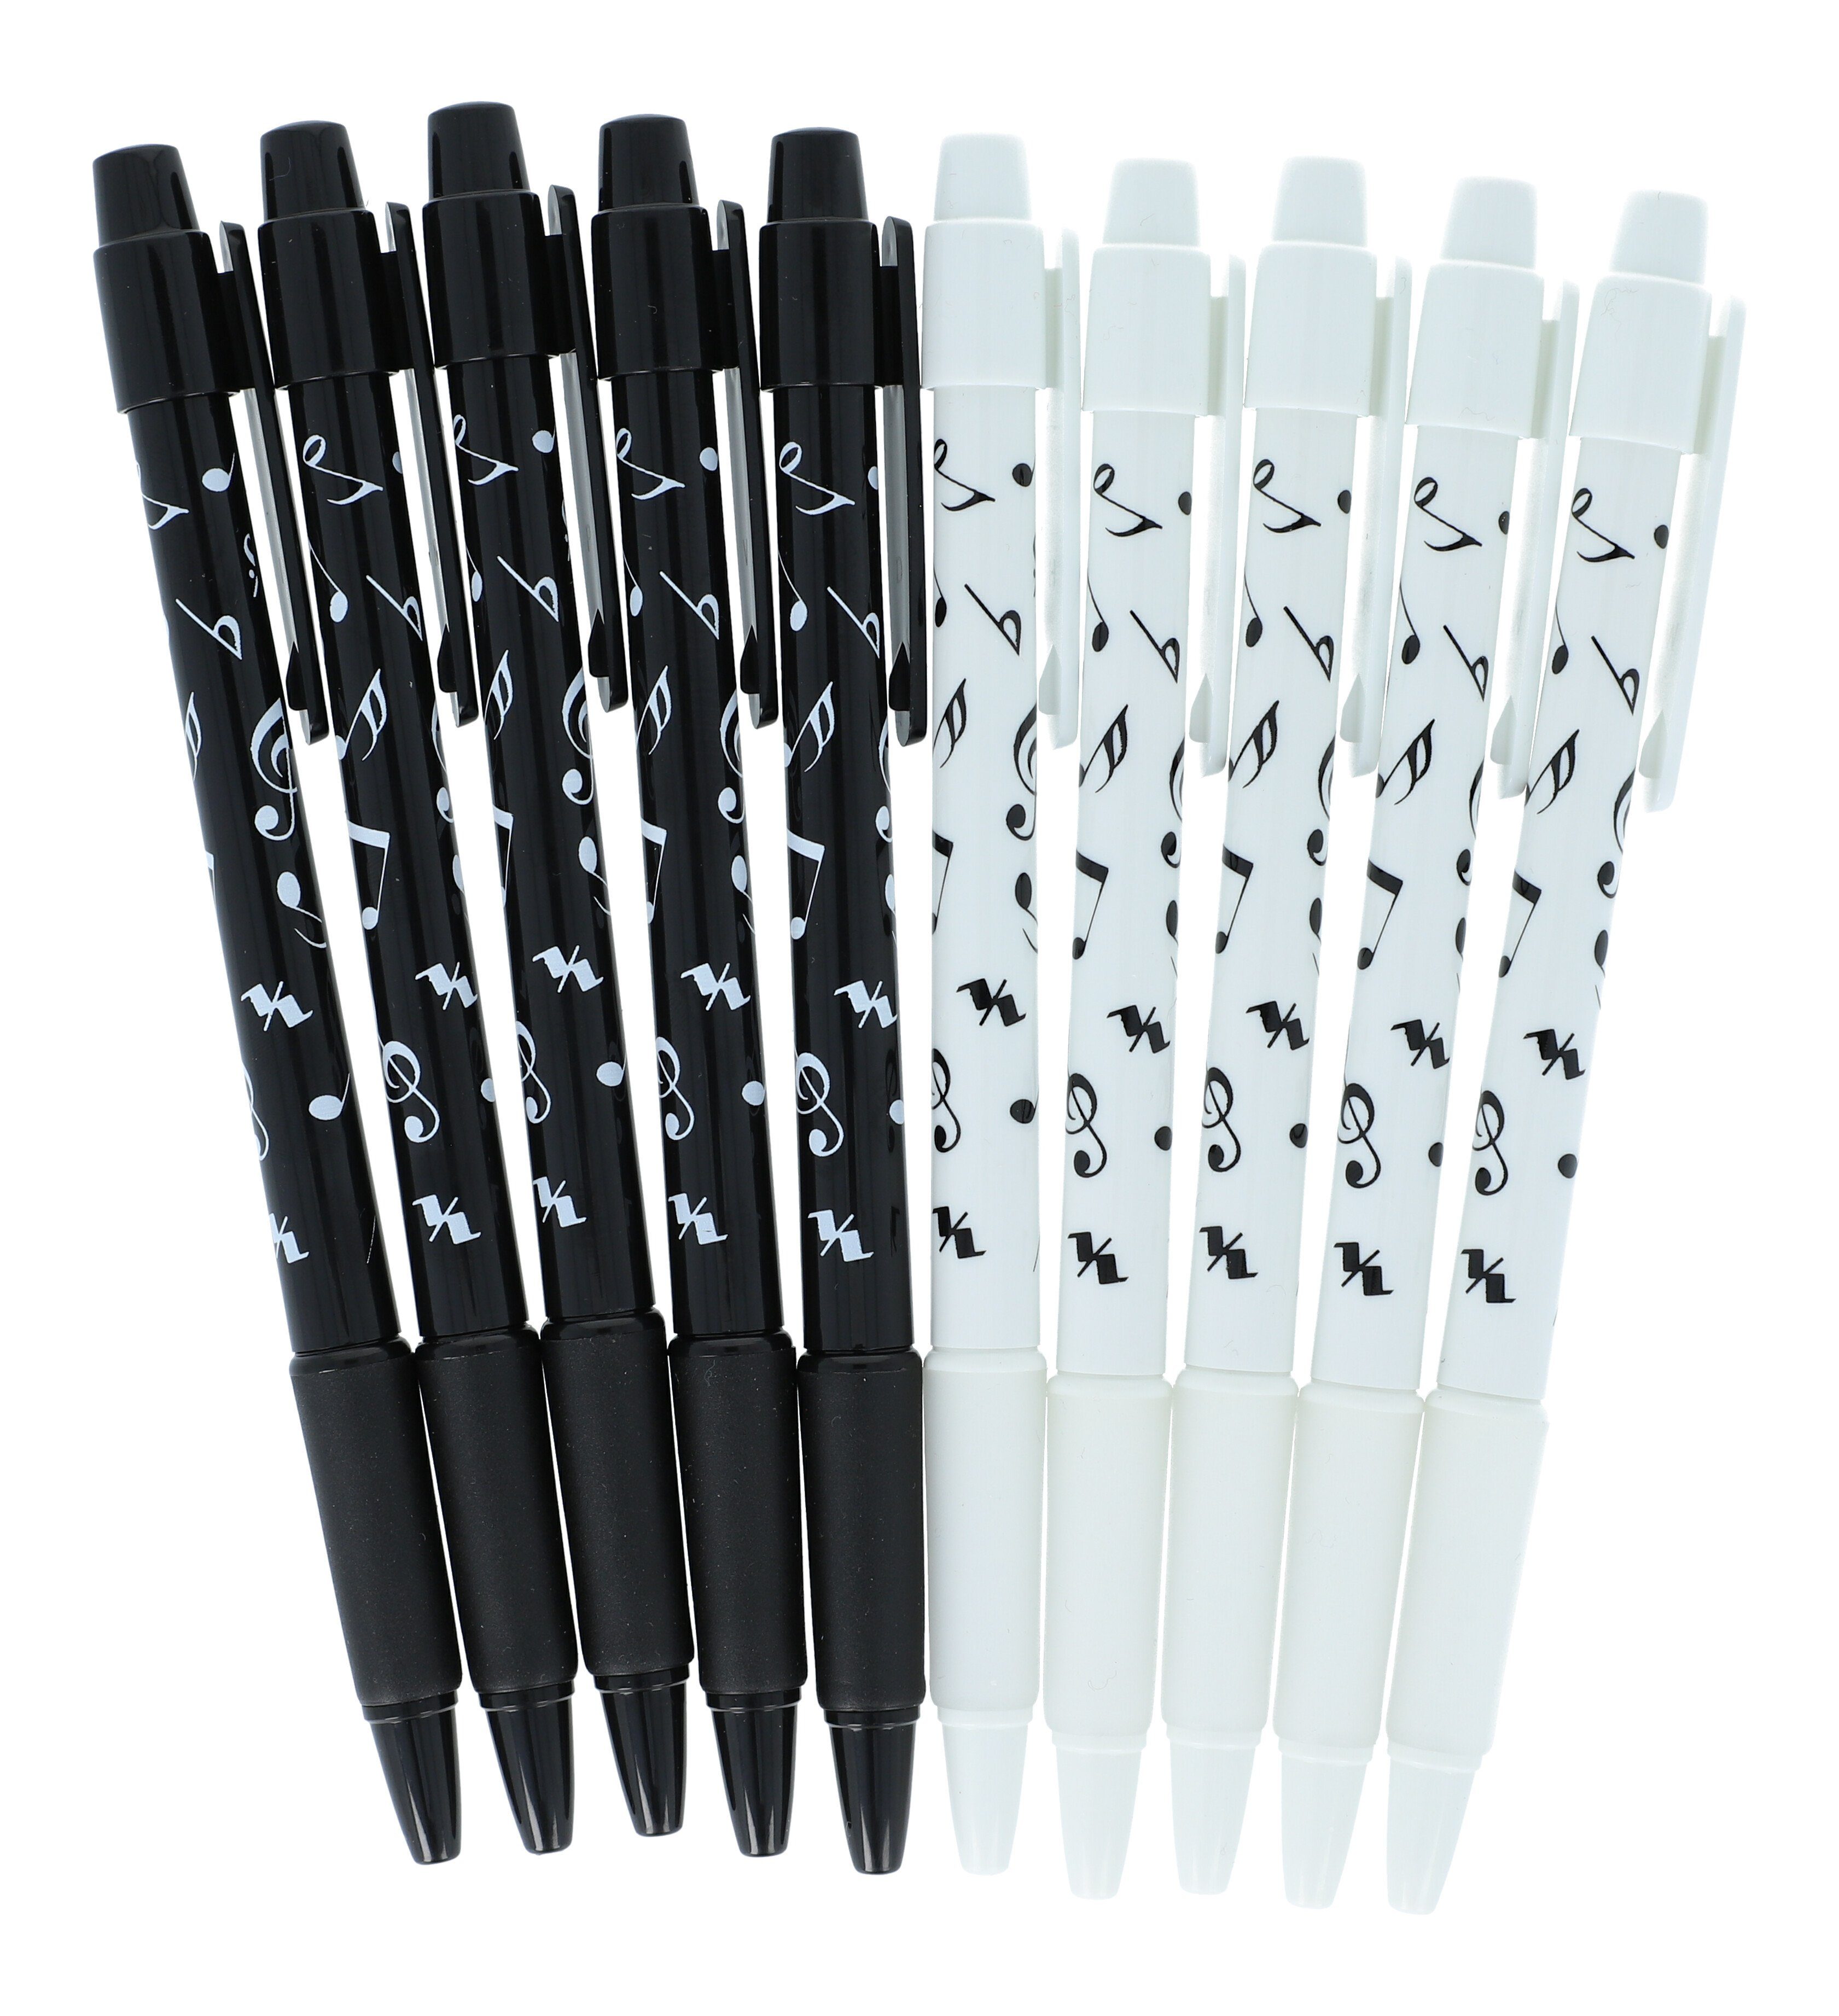 Musikboutique Kugelschreiber, aus Kunststoff, schwarz und weiß, 10 Stück